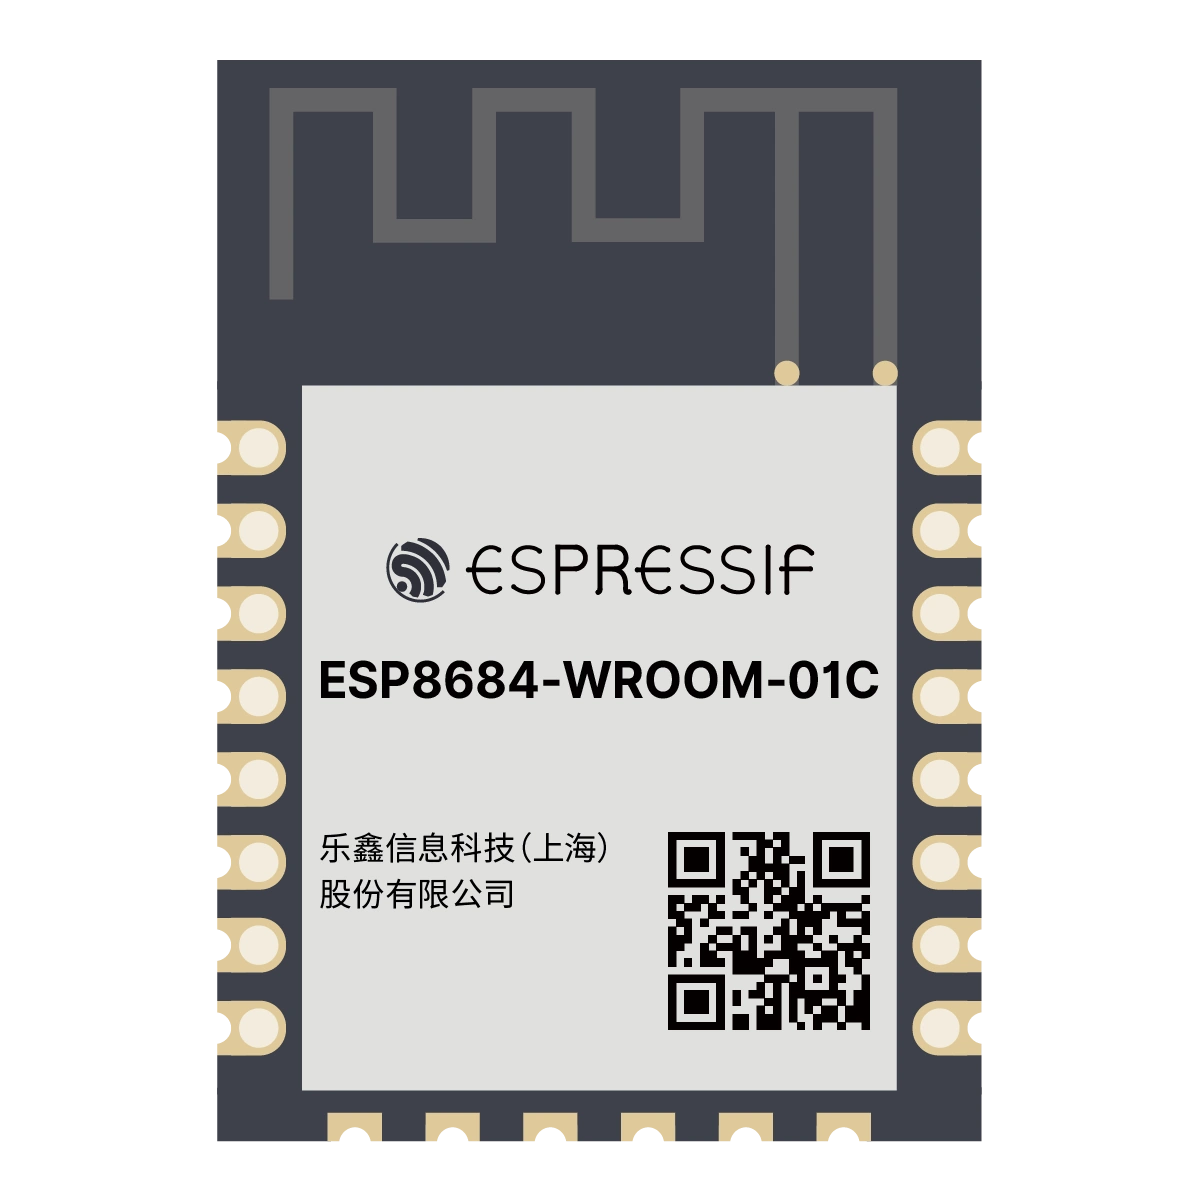 ESP8684-WROOM-01C ESP32-C2 ESP-12 Compatible